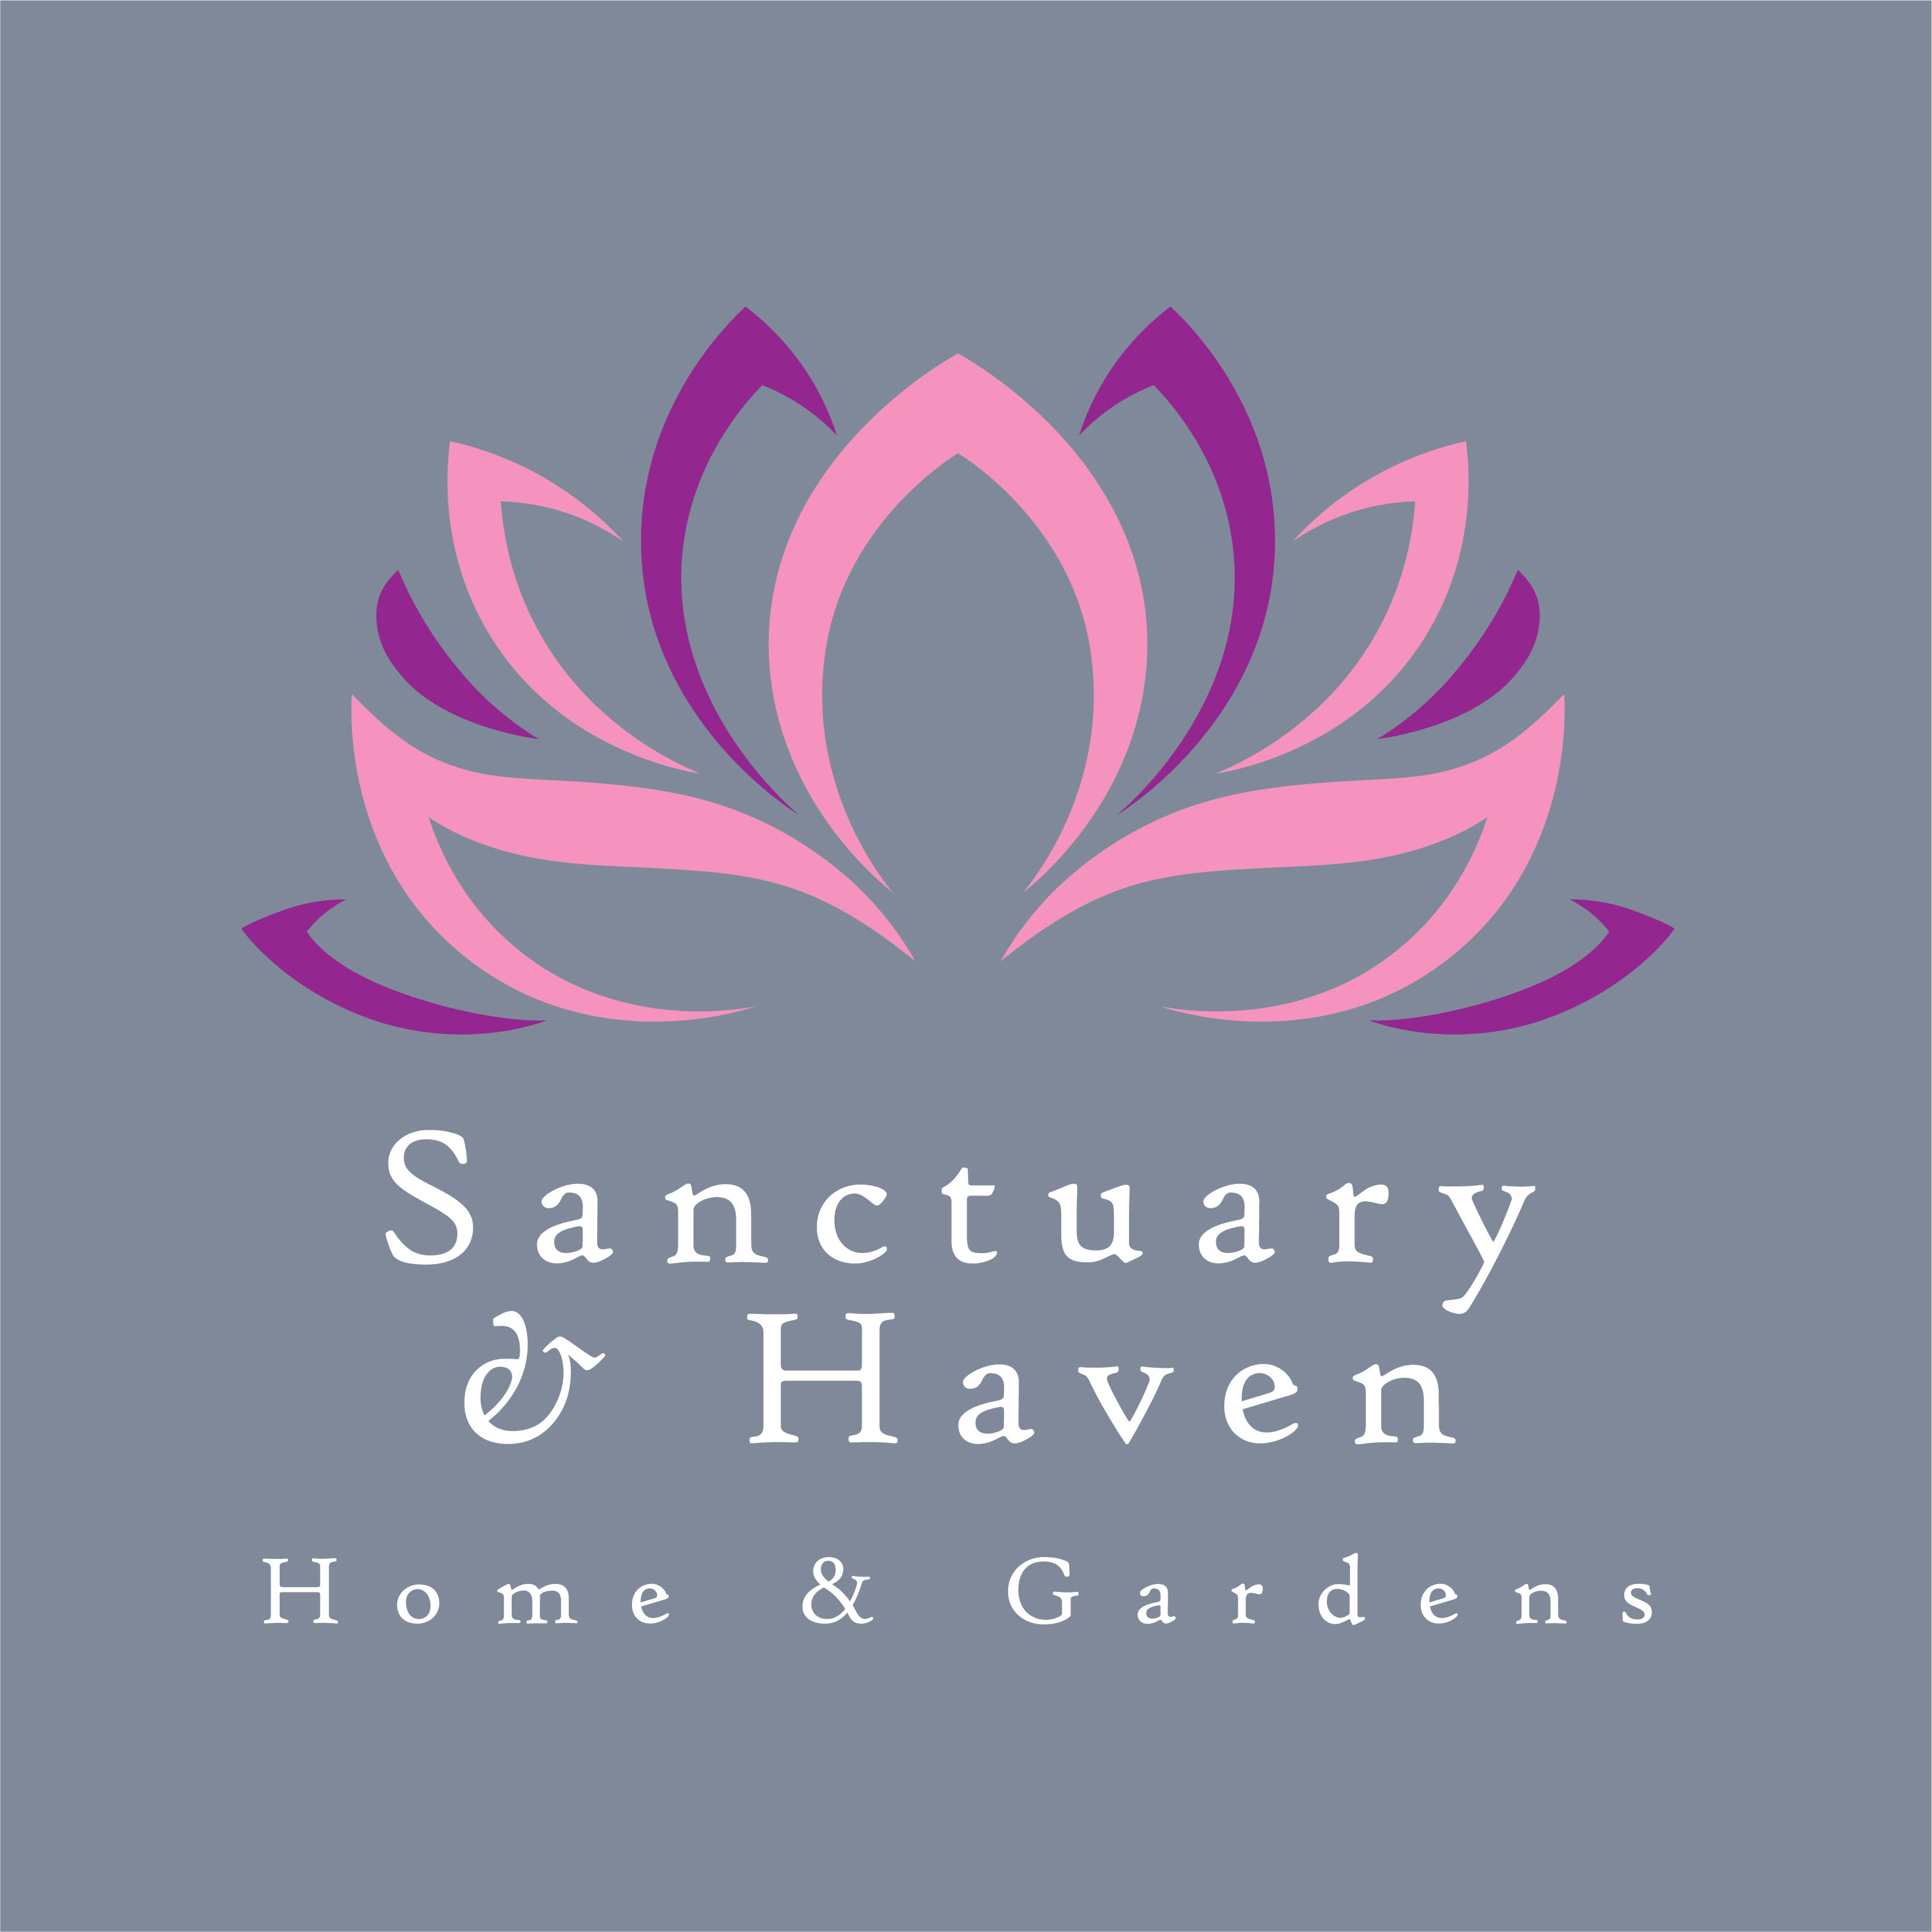 Sanctuary & Haven - Home & Gardens